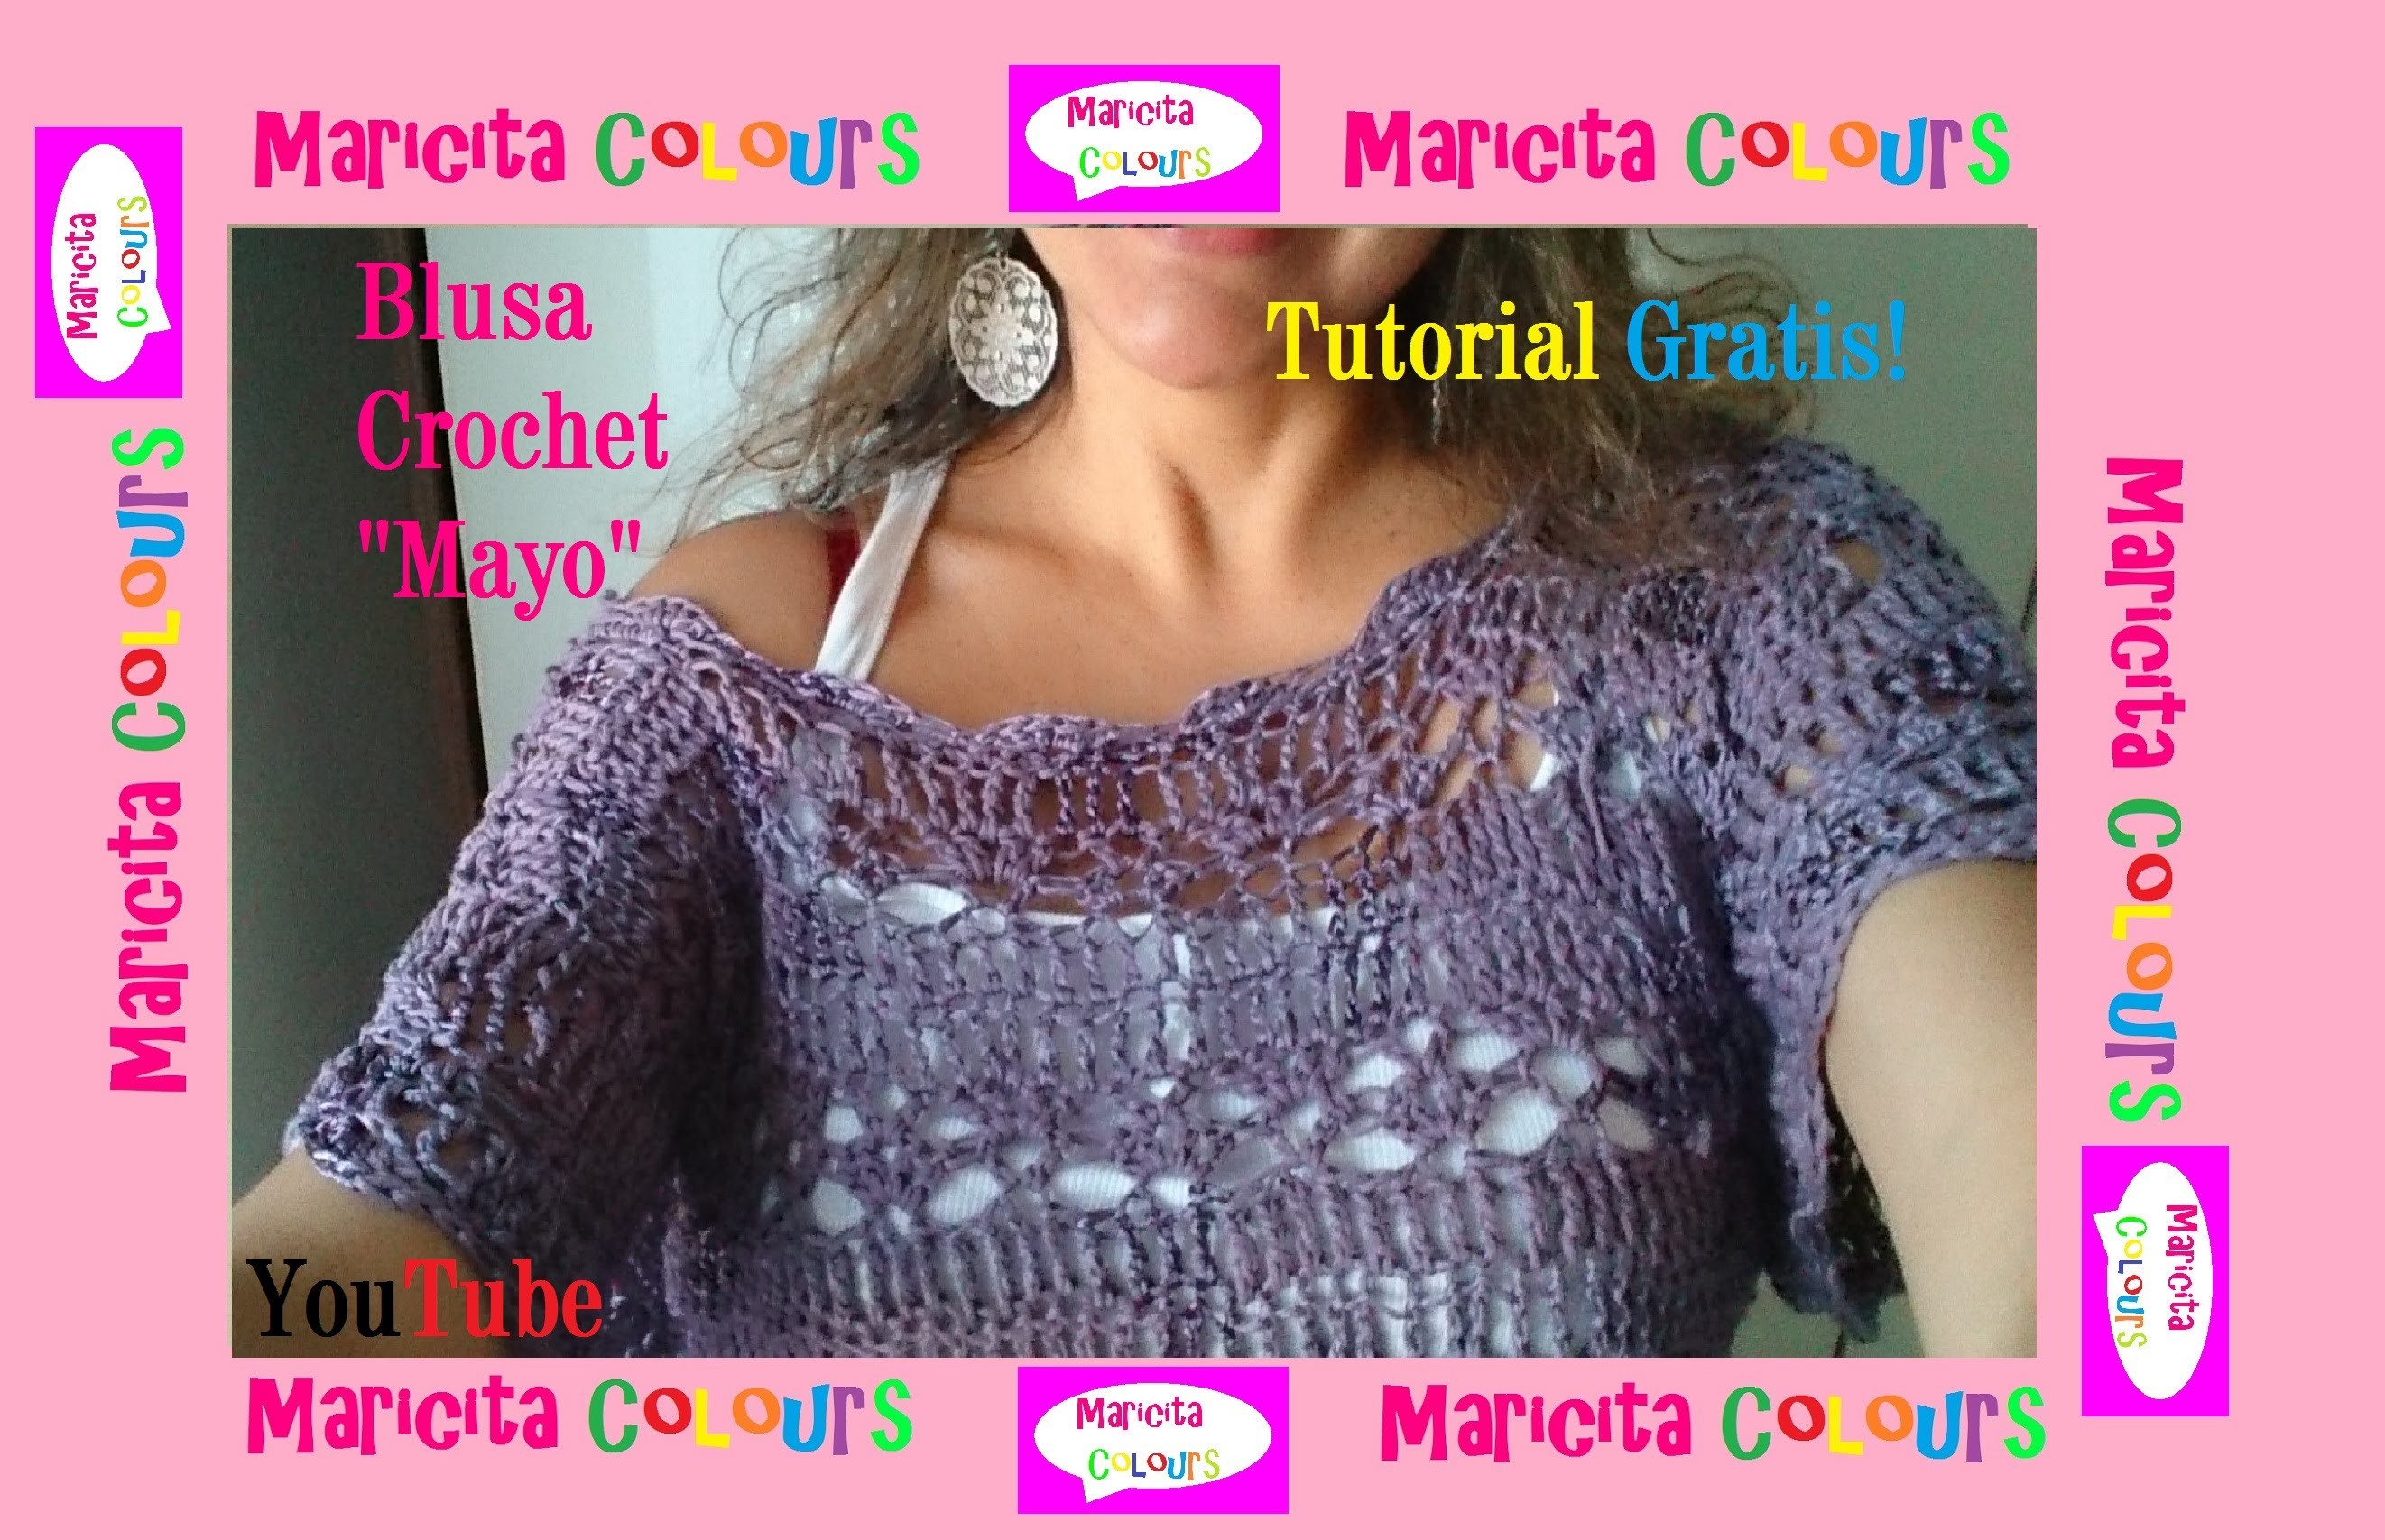 Crochet Blusa "Mayo" (Parte 2) Fácil de tejer Tutorial Gratis por Maricita Colours